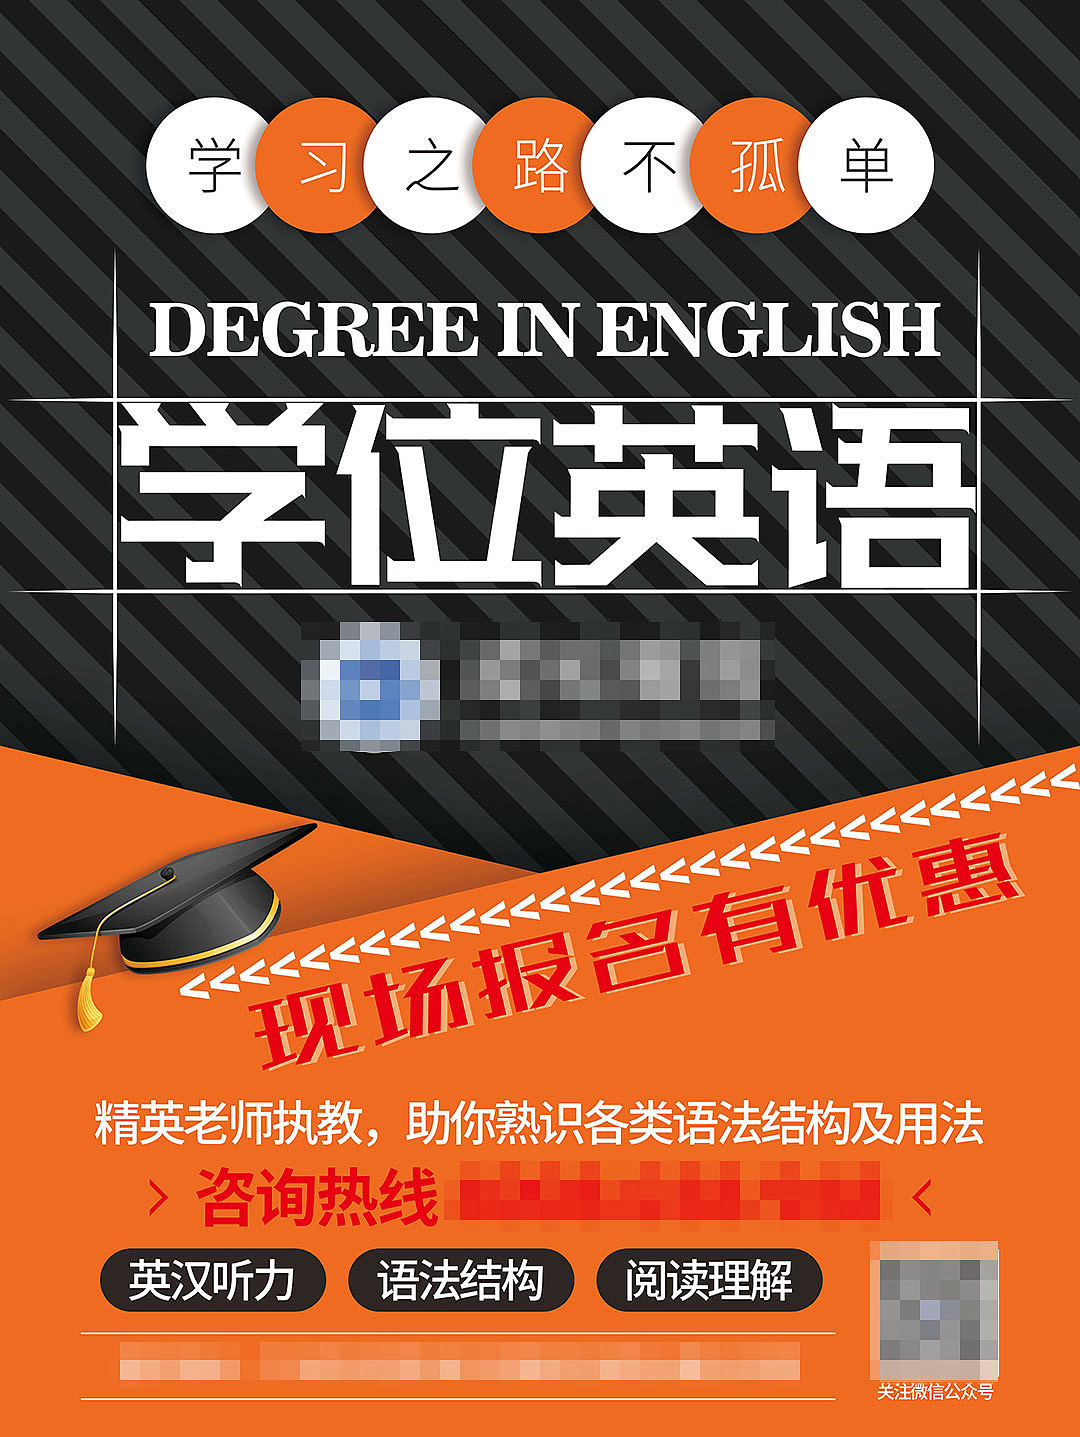 英语课程banner图片